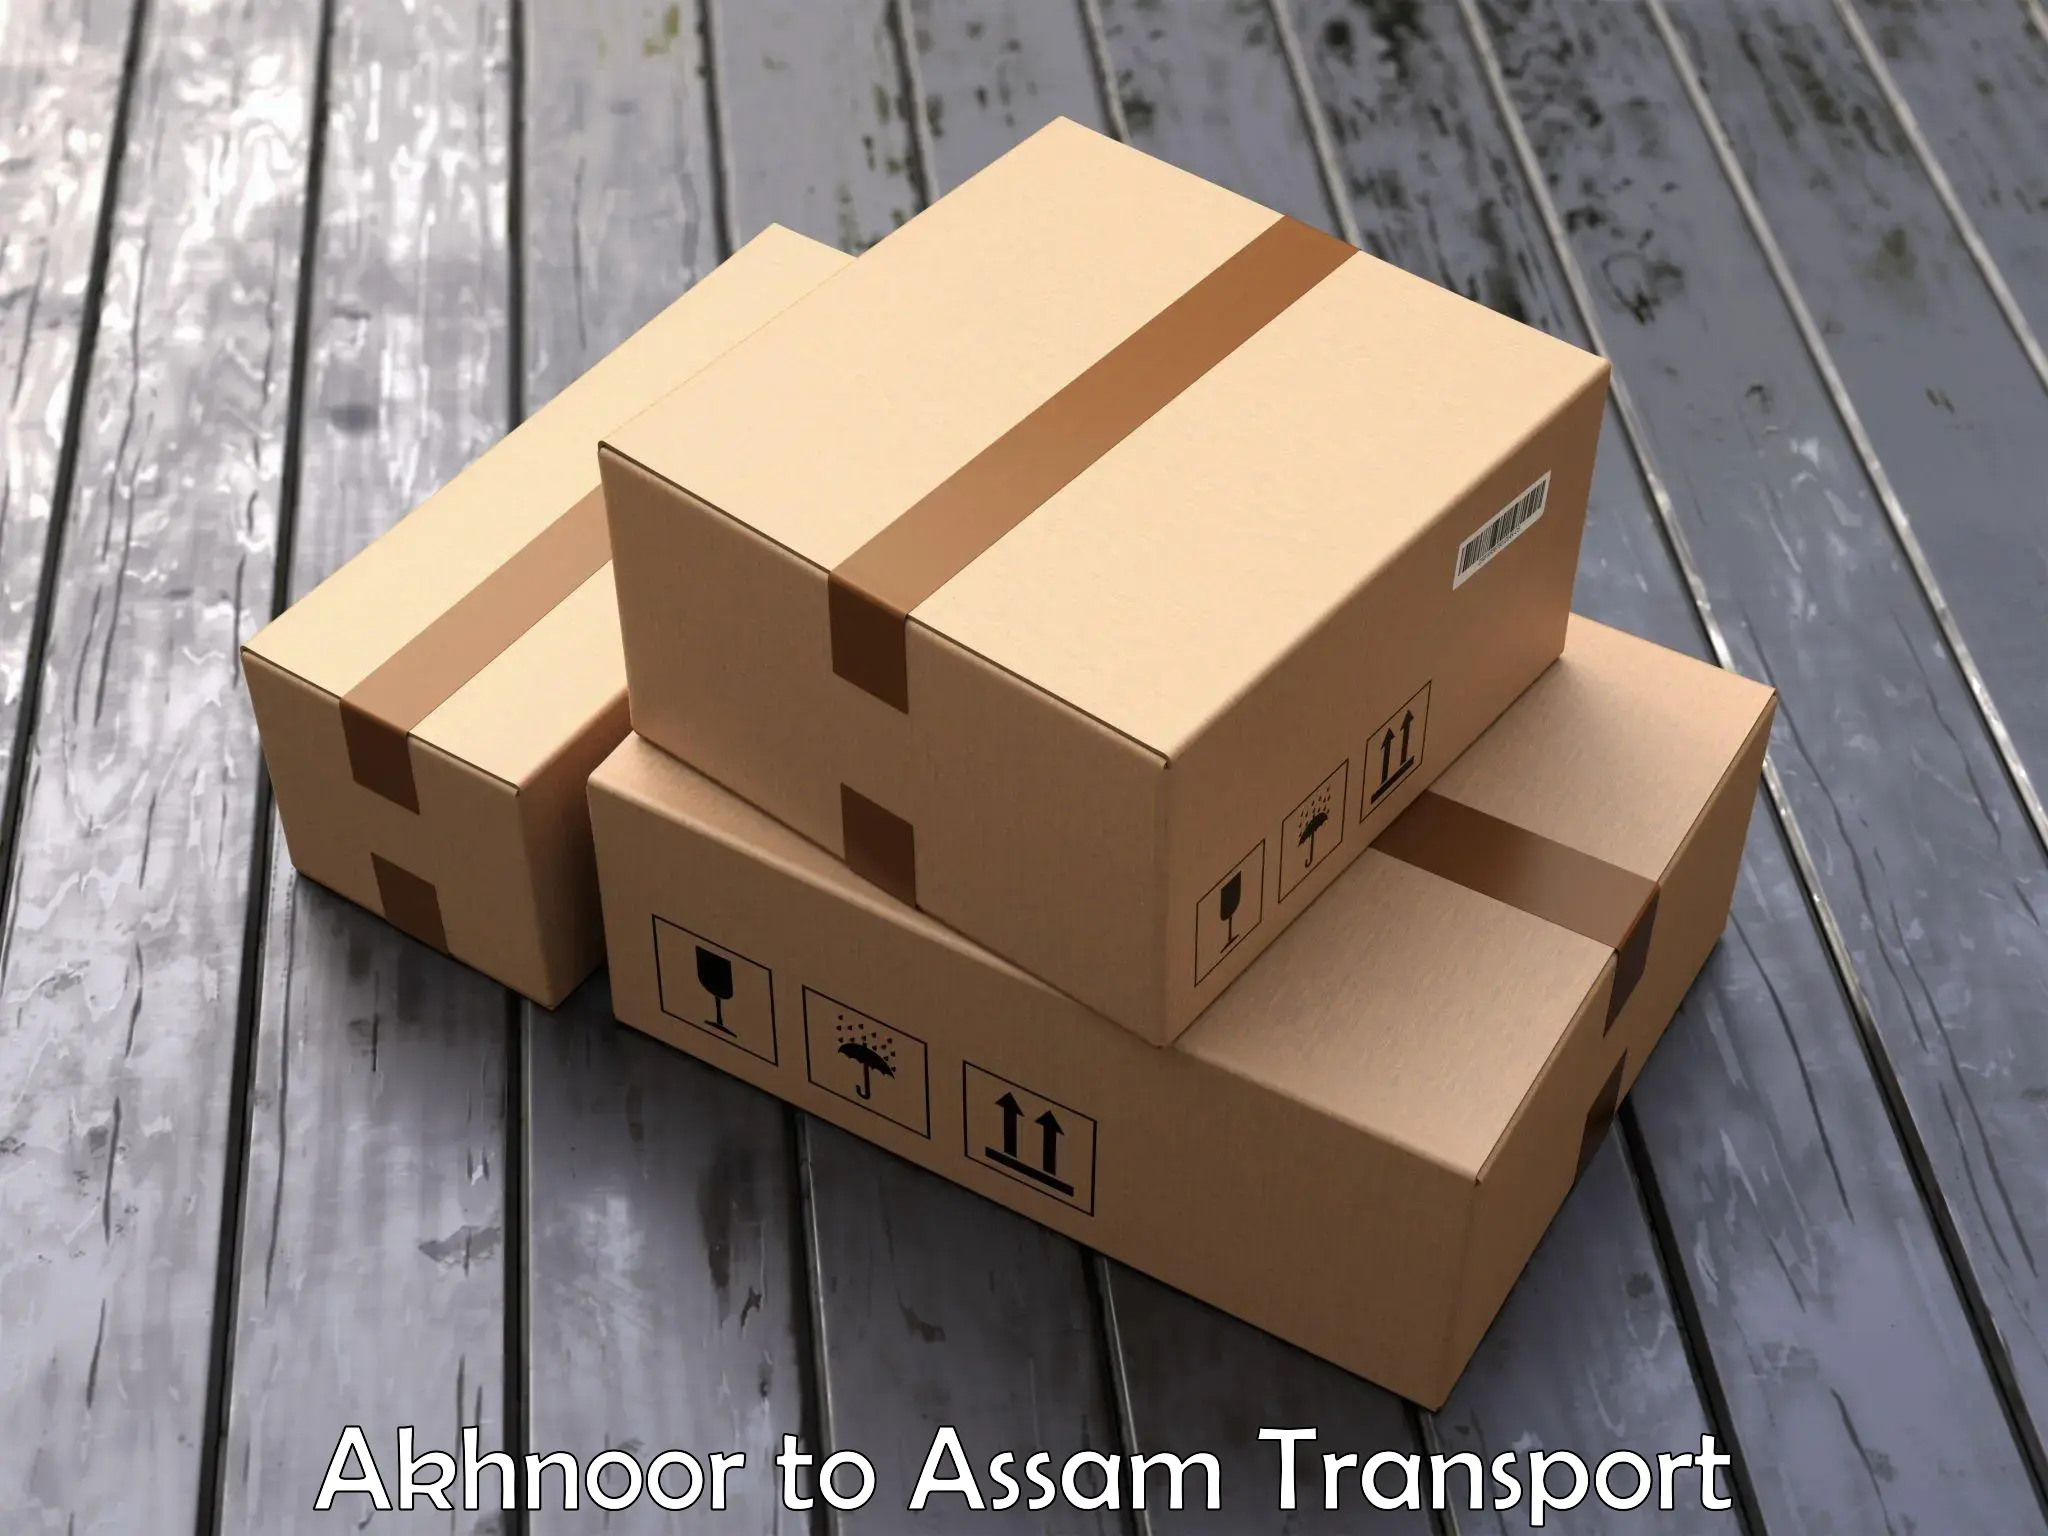 Lorry transport service Akhnoor to Thelamara